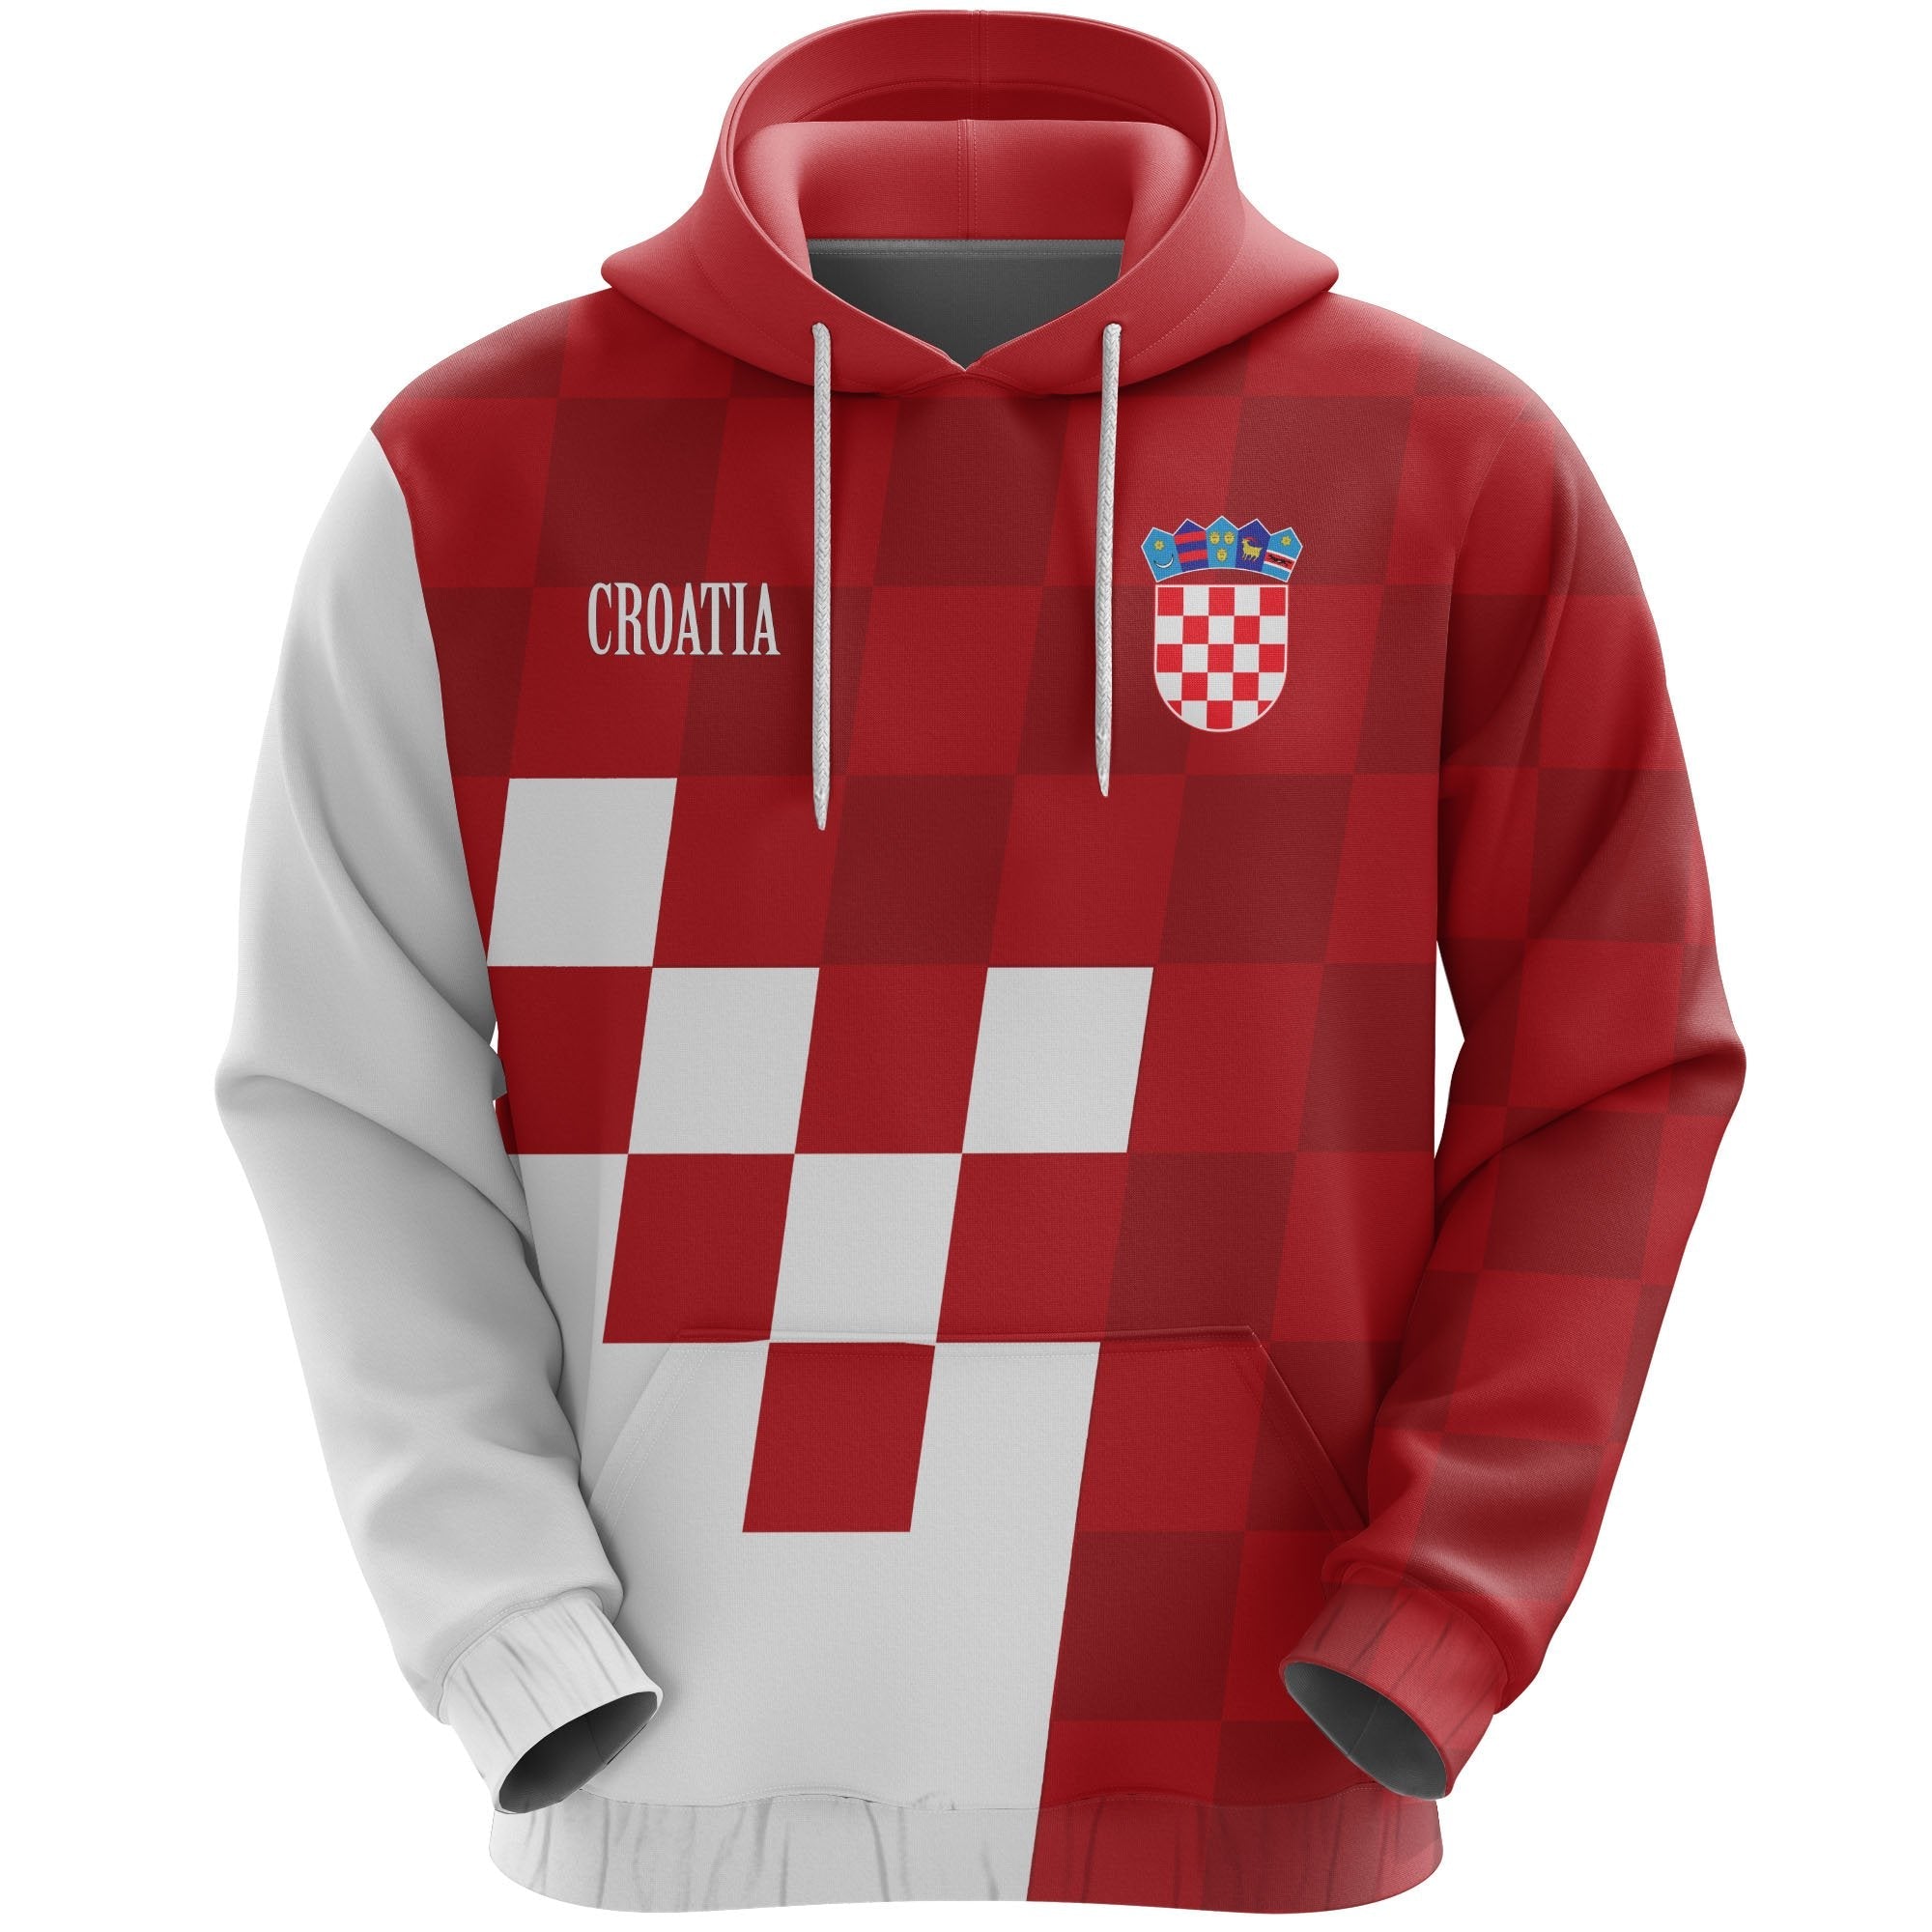 croatia-coat-of-arms-hoodie-special-version